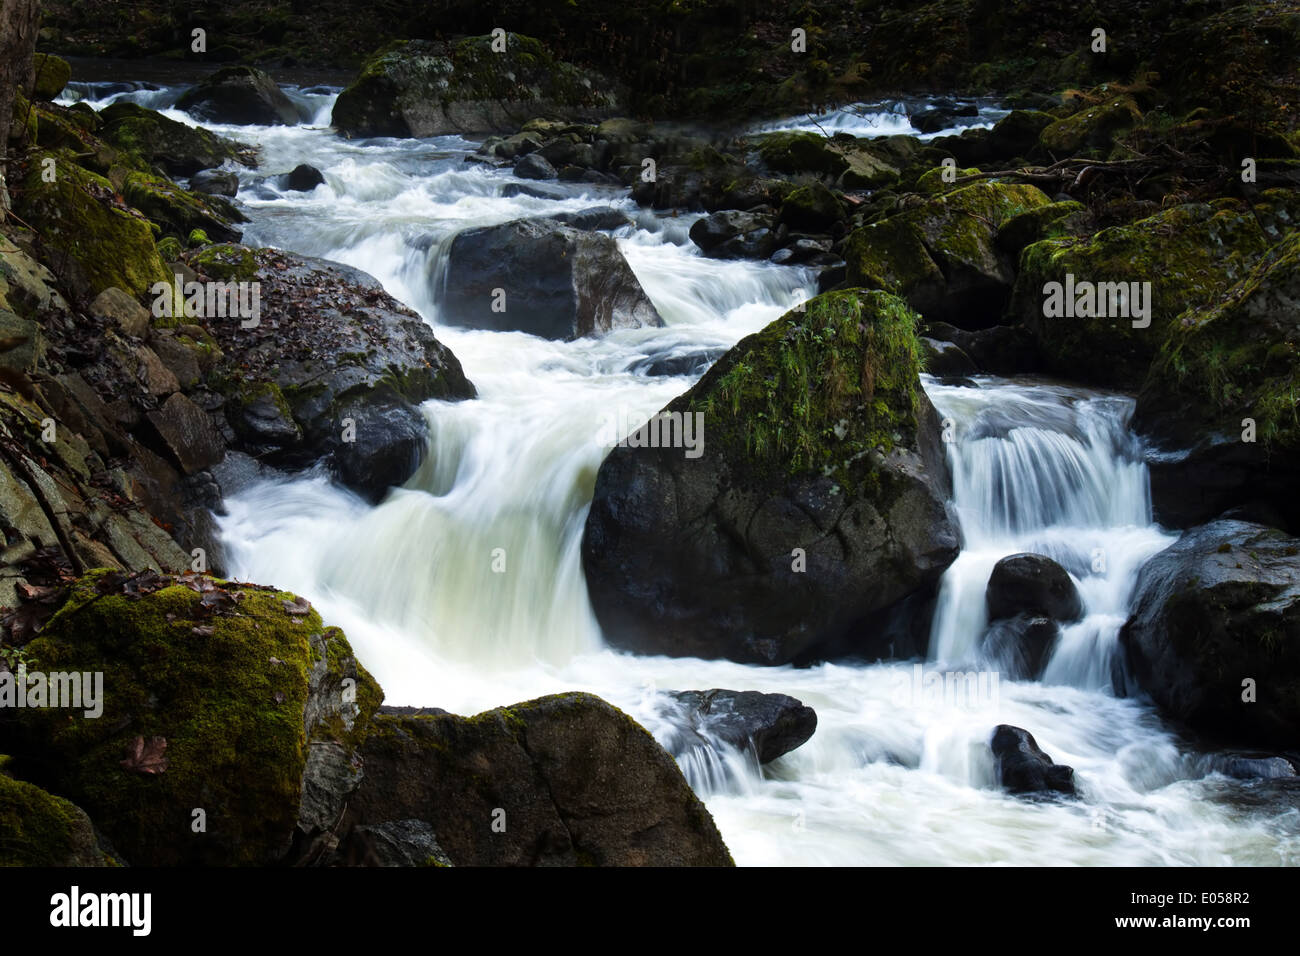 Un ruscello con acqua fluente e pietre (rock), Ein Bach mit fliessendem Wasser und Steinen (Felsen) Foto Stock